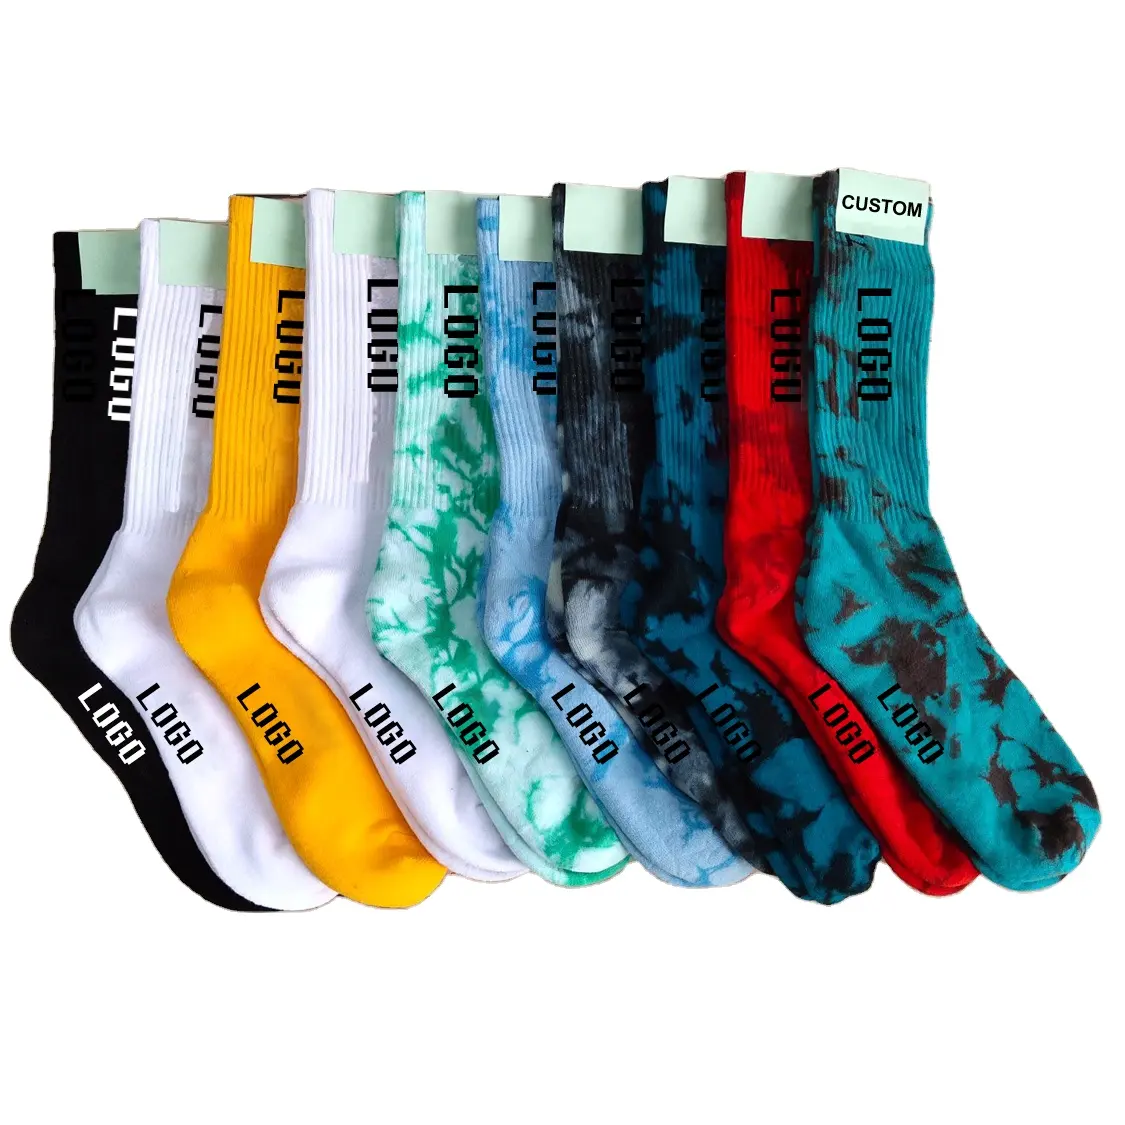 Designer jacquard knitted logo tie dye socks famous brands crew custom sport socks for men